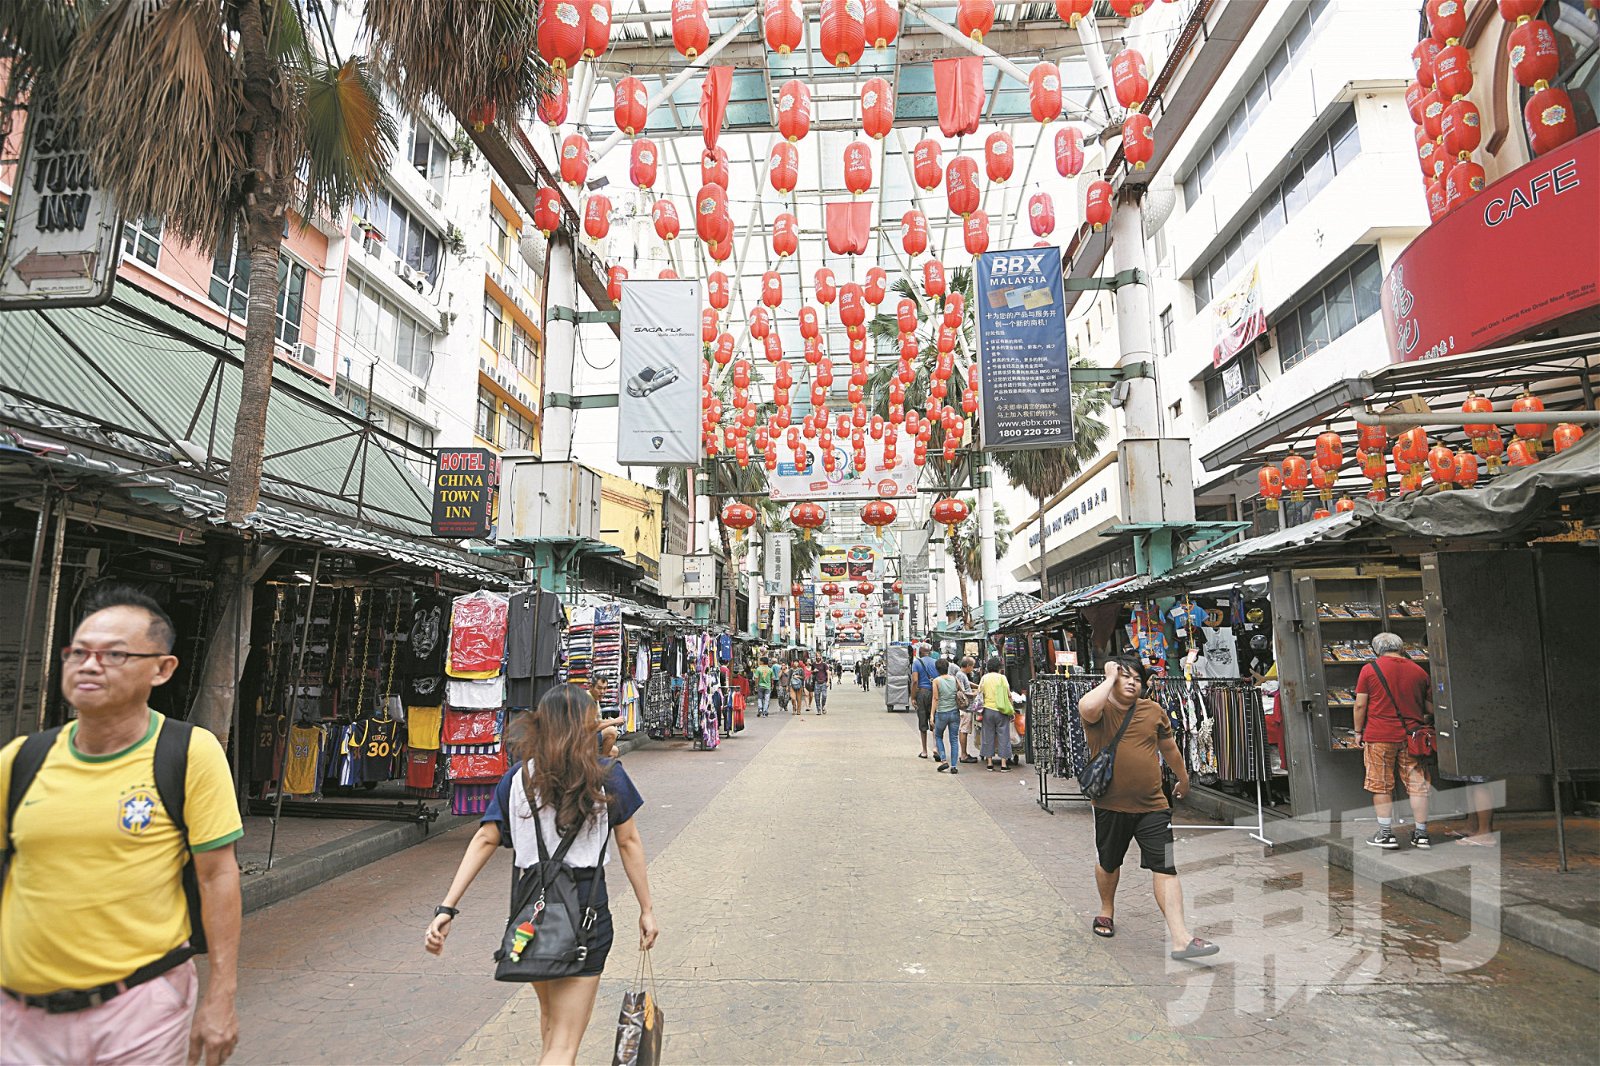 茨厂街是吉隆坡著名旅游景点，也是外国游客访马的必经之地。惟当地近来周末及公共假日出现遍地垃圾问题，影响市容。（摄影：伍信隆）